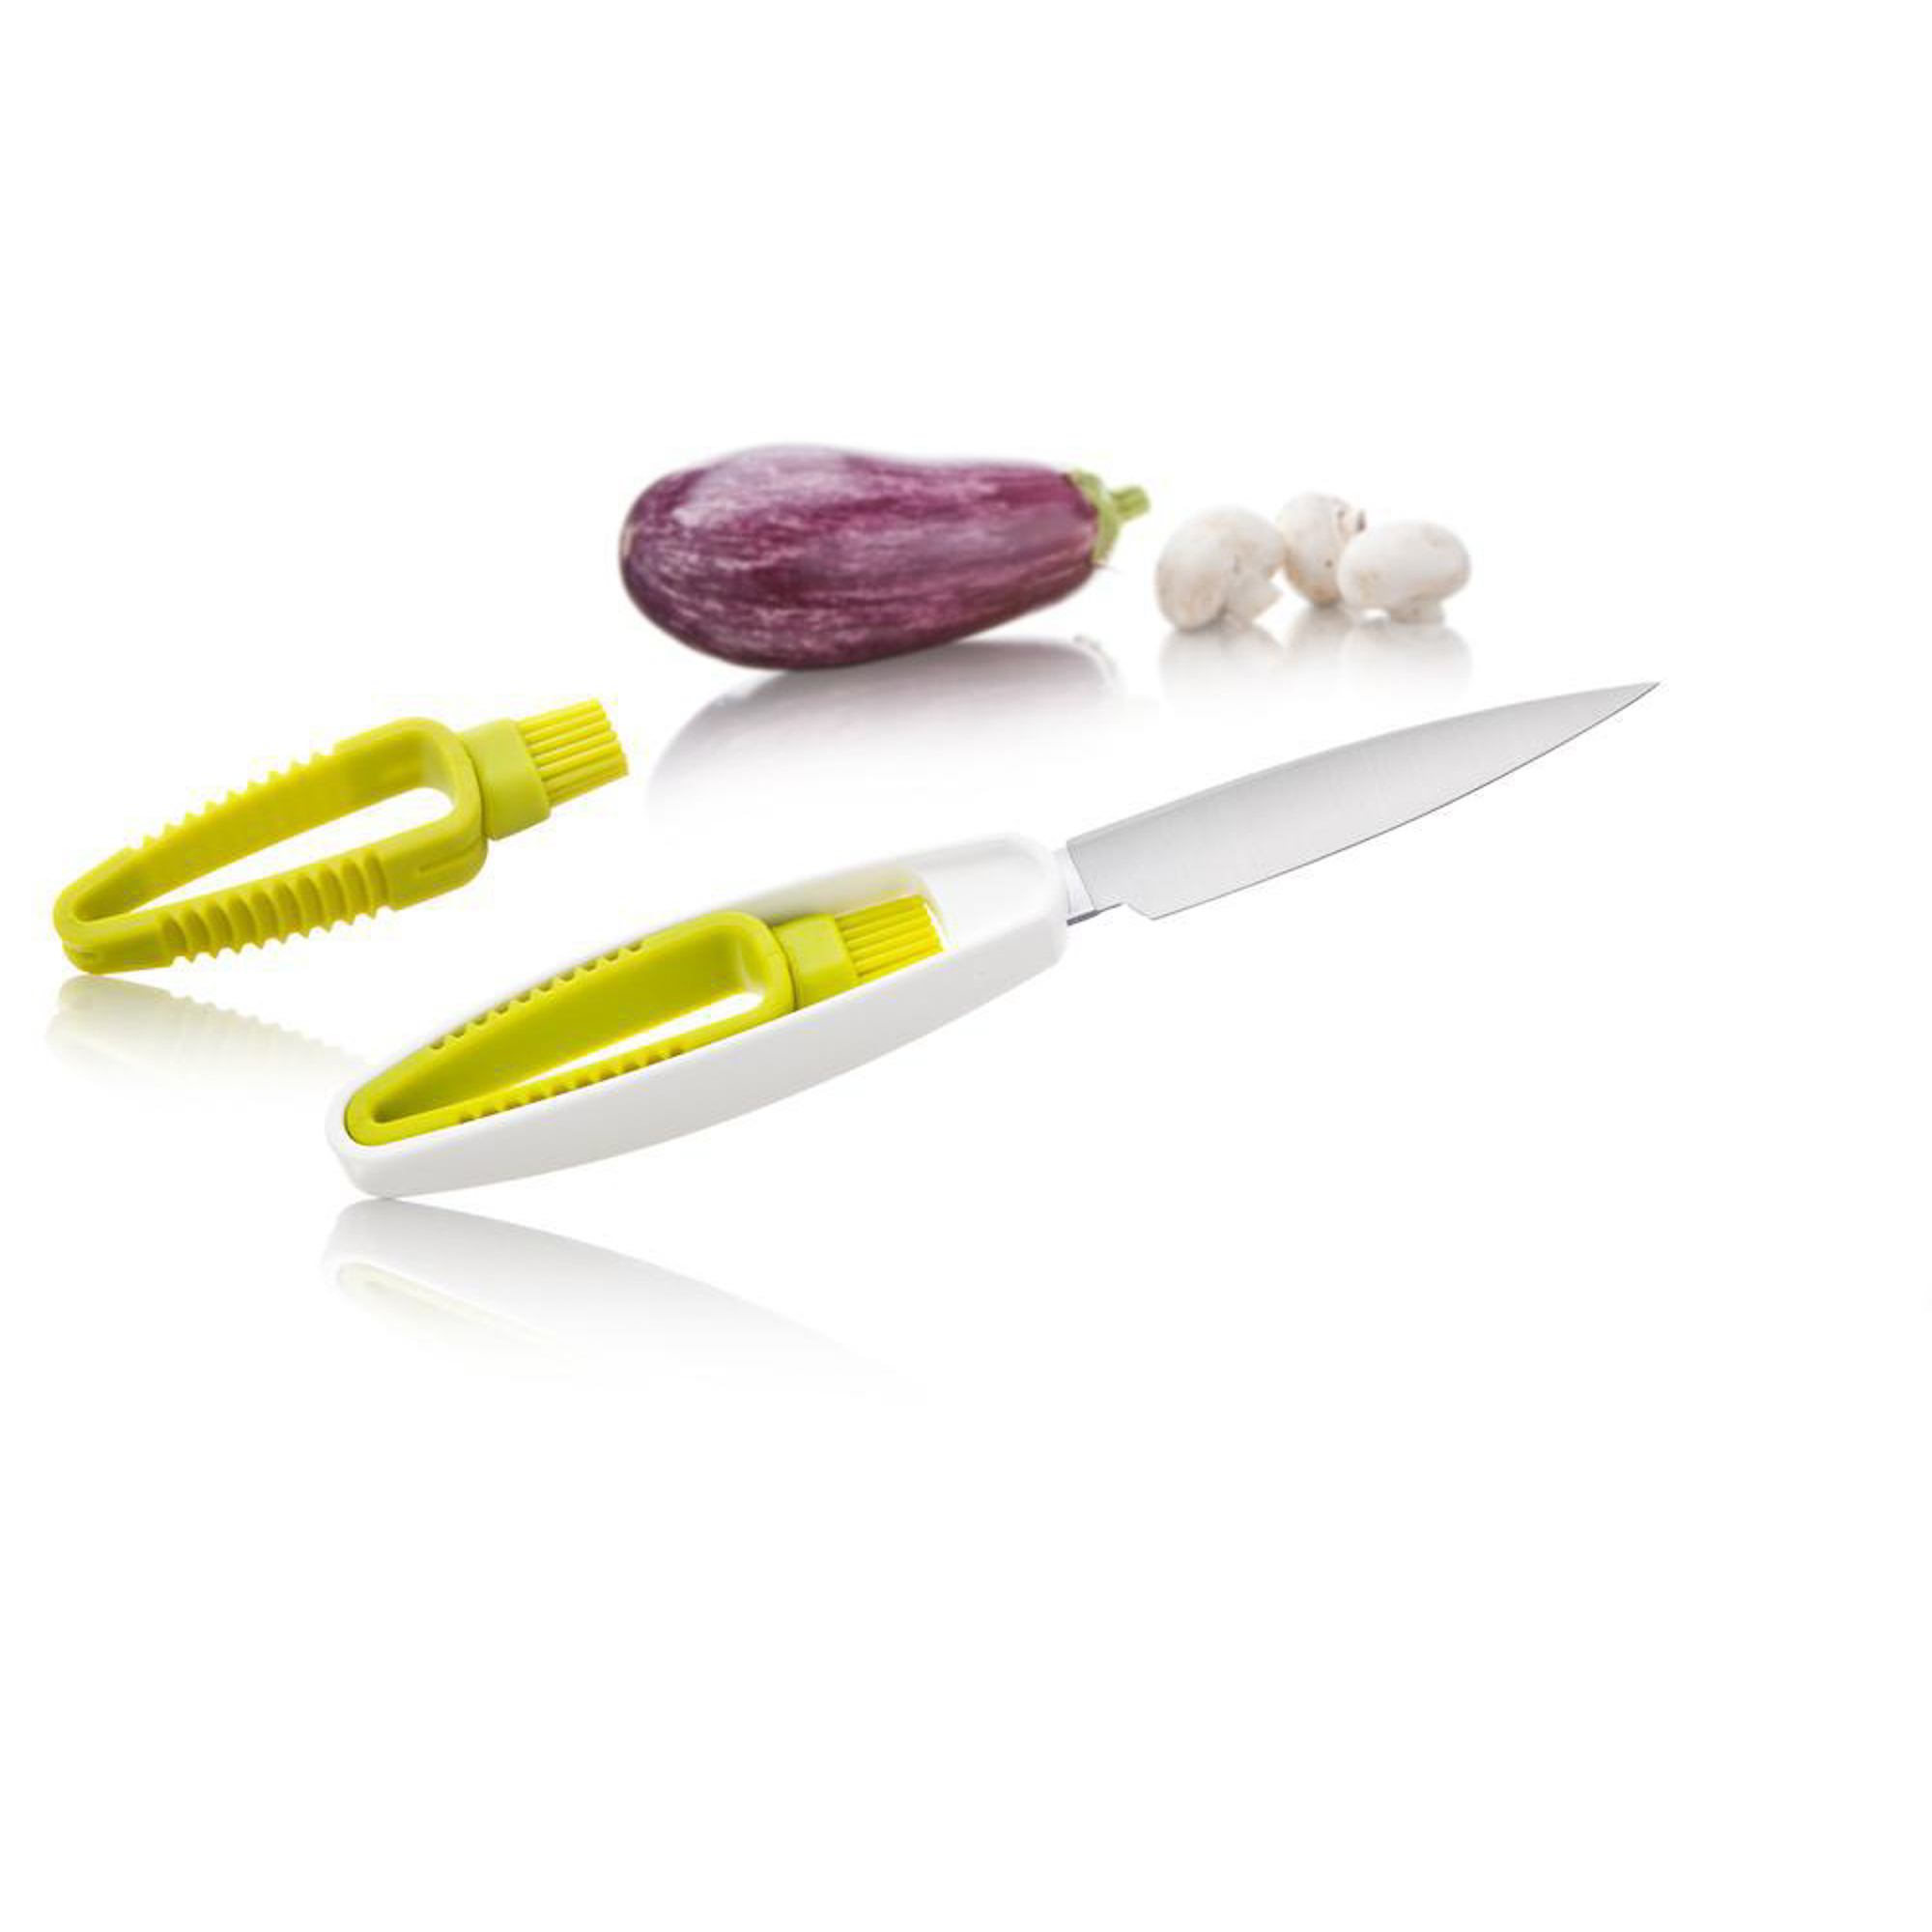 Нож для овощей со щеткой Tomorrow's kitchen нож для очистки овощей victorinox